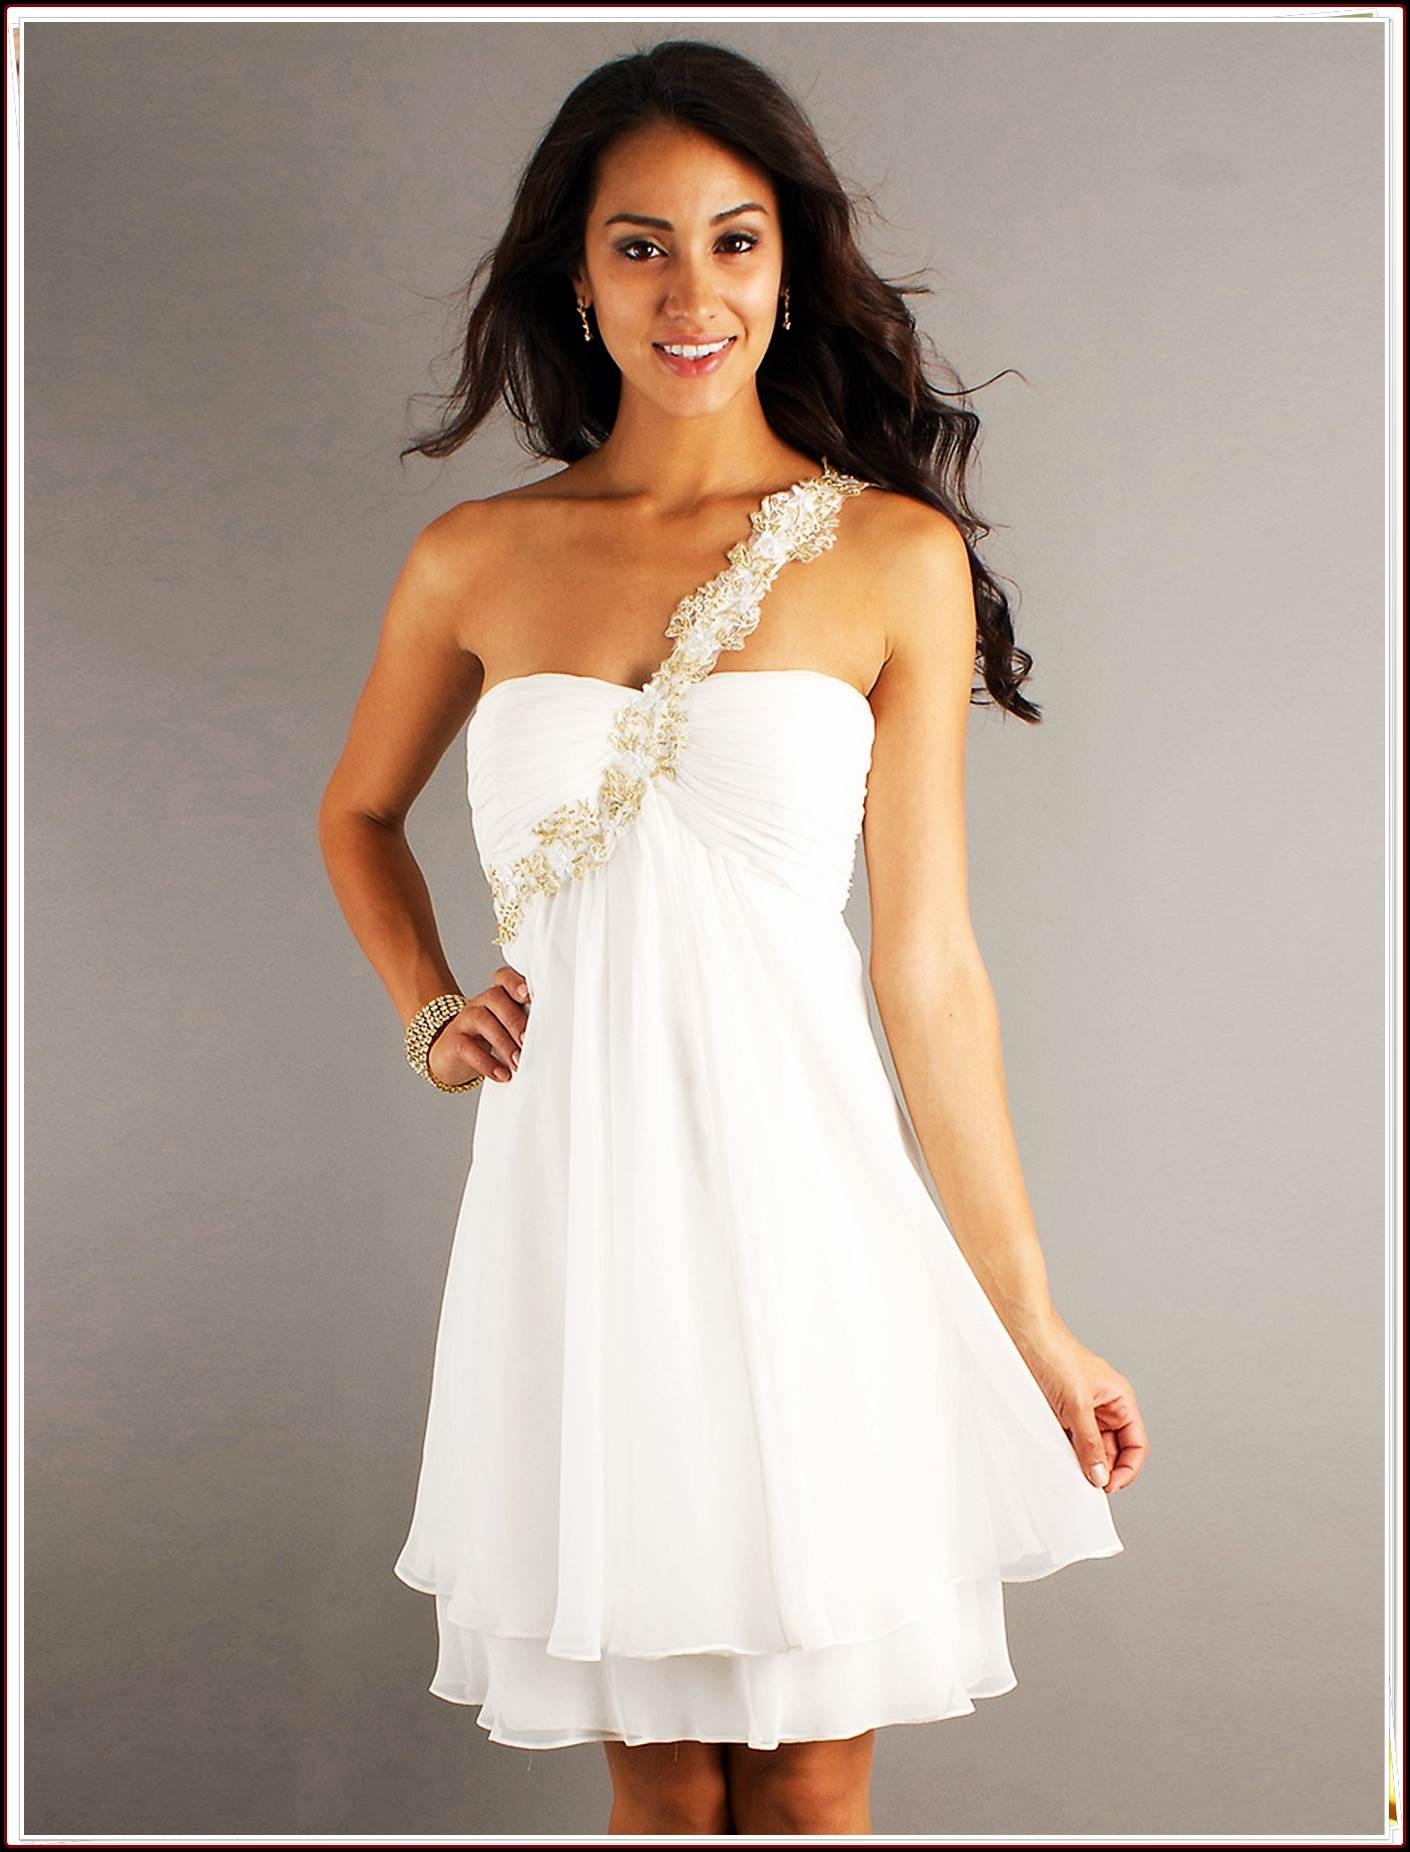 Luxurius Kurze Kleider Weiß VertriebDesigner Spektakulär Kurze Kleider Weiß Spezialgebiet